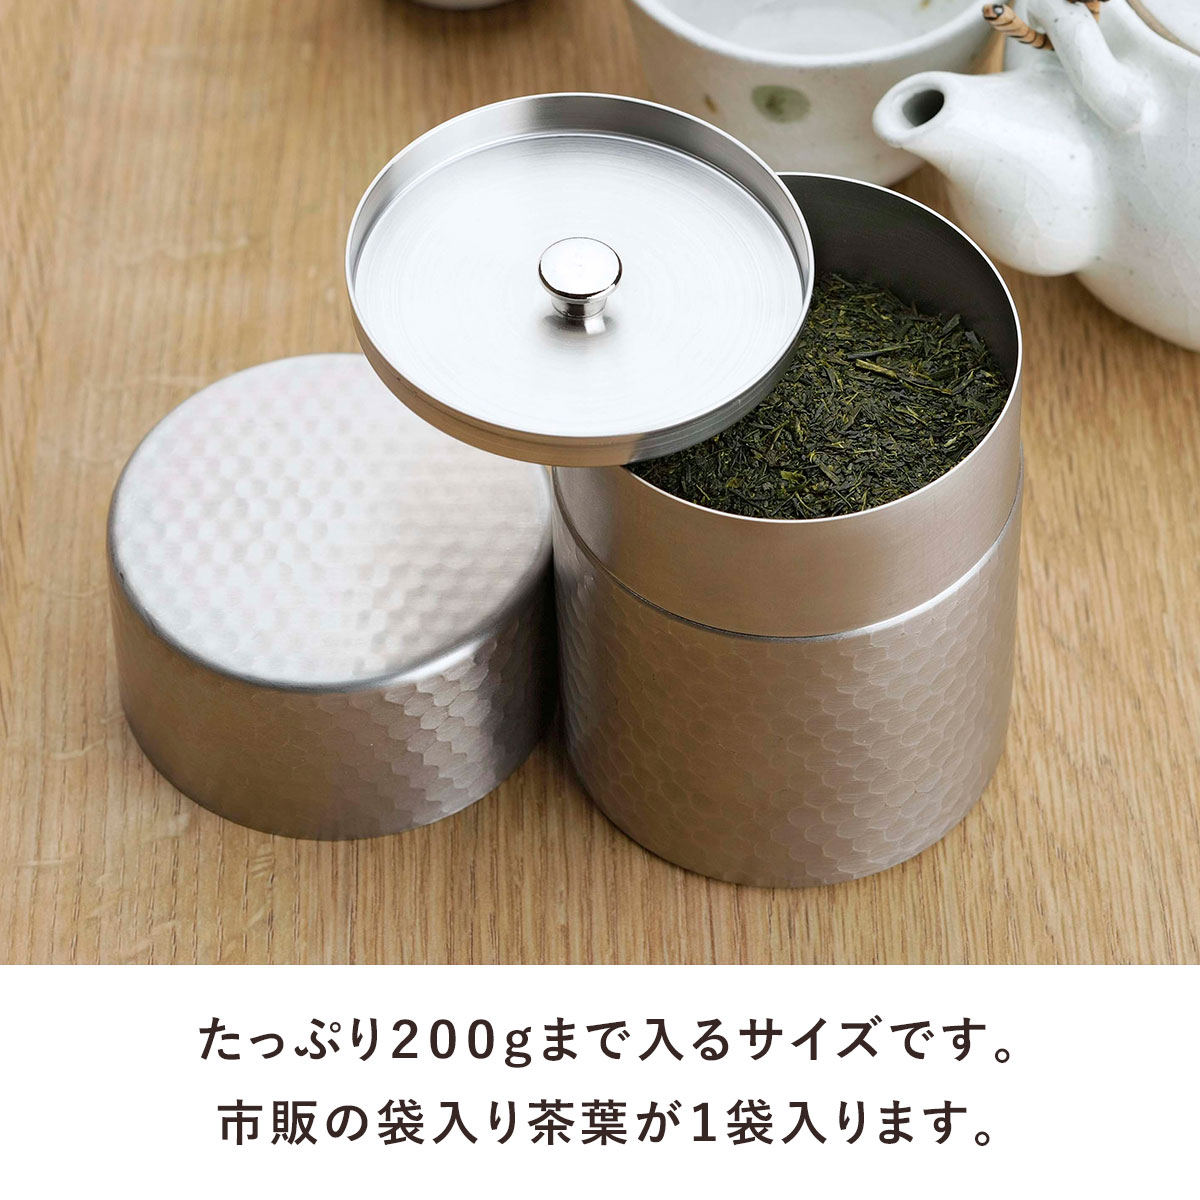 最高の品質の 茶考具 茶筒 日本製 ステンレス お茶 茶葉 お茶入れ 密閉 下村企販 KOGU 職人 技 緑茶 Tea 保存缶 キャニスター 茶缶 保存 